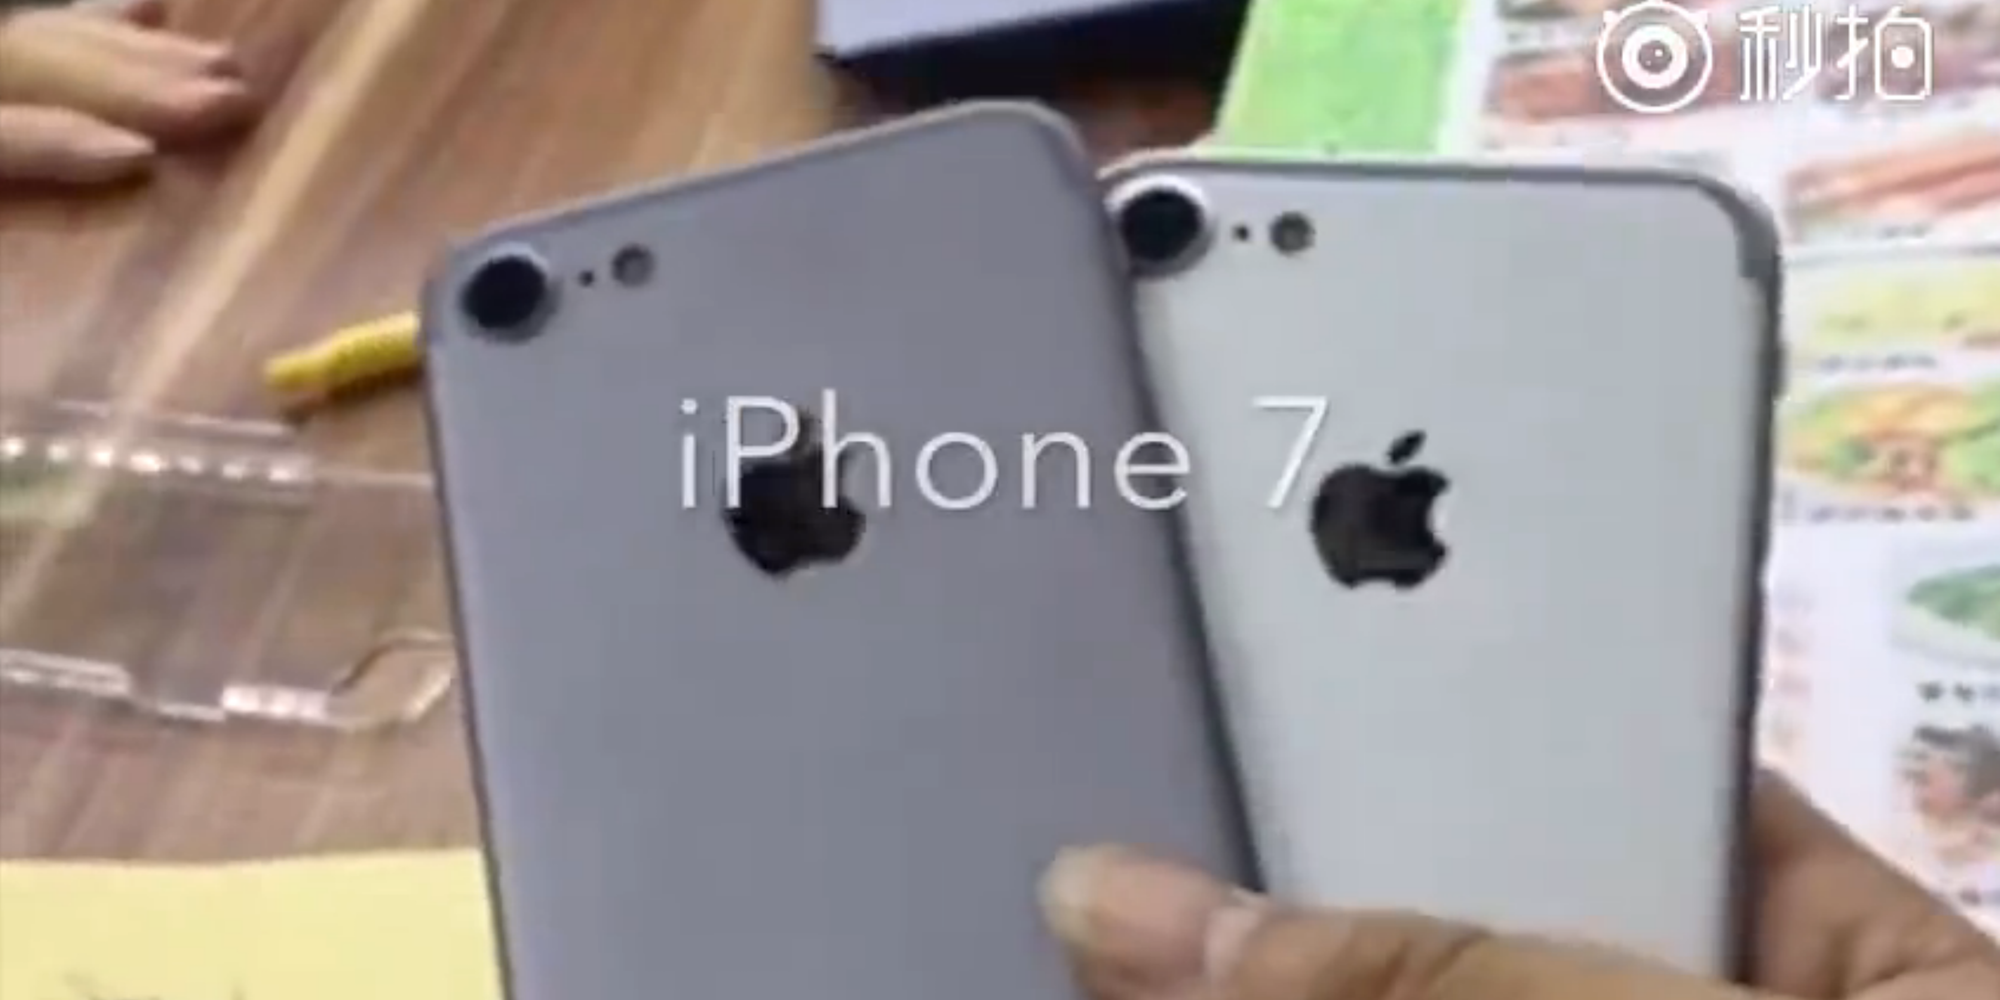 ｢iPhone 7｣のモックアップを撮影した映像